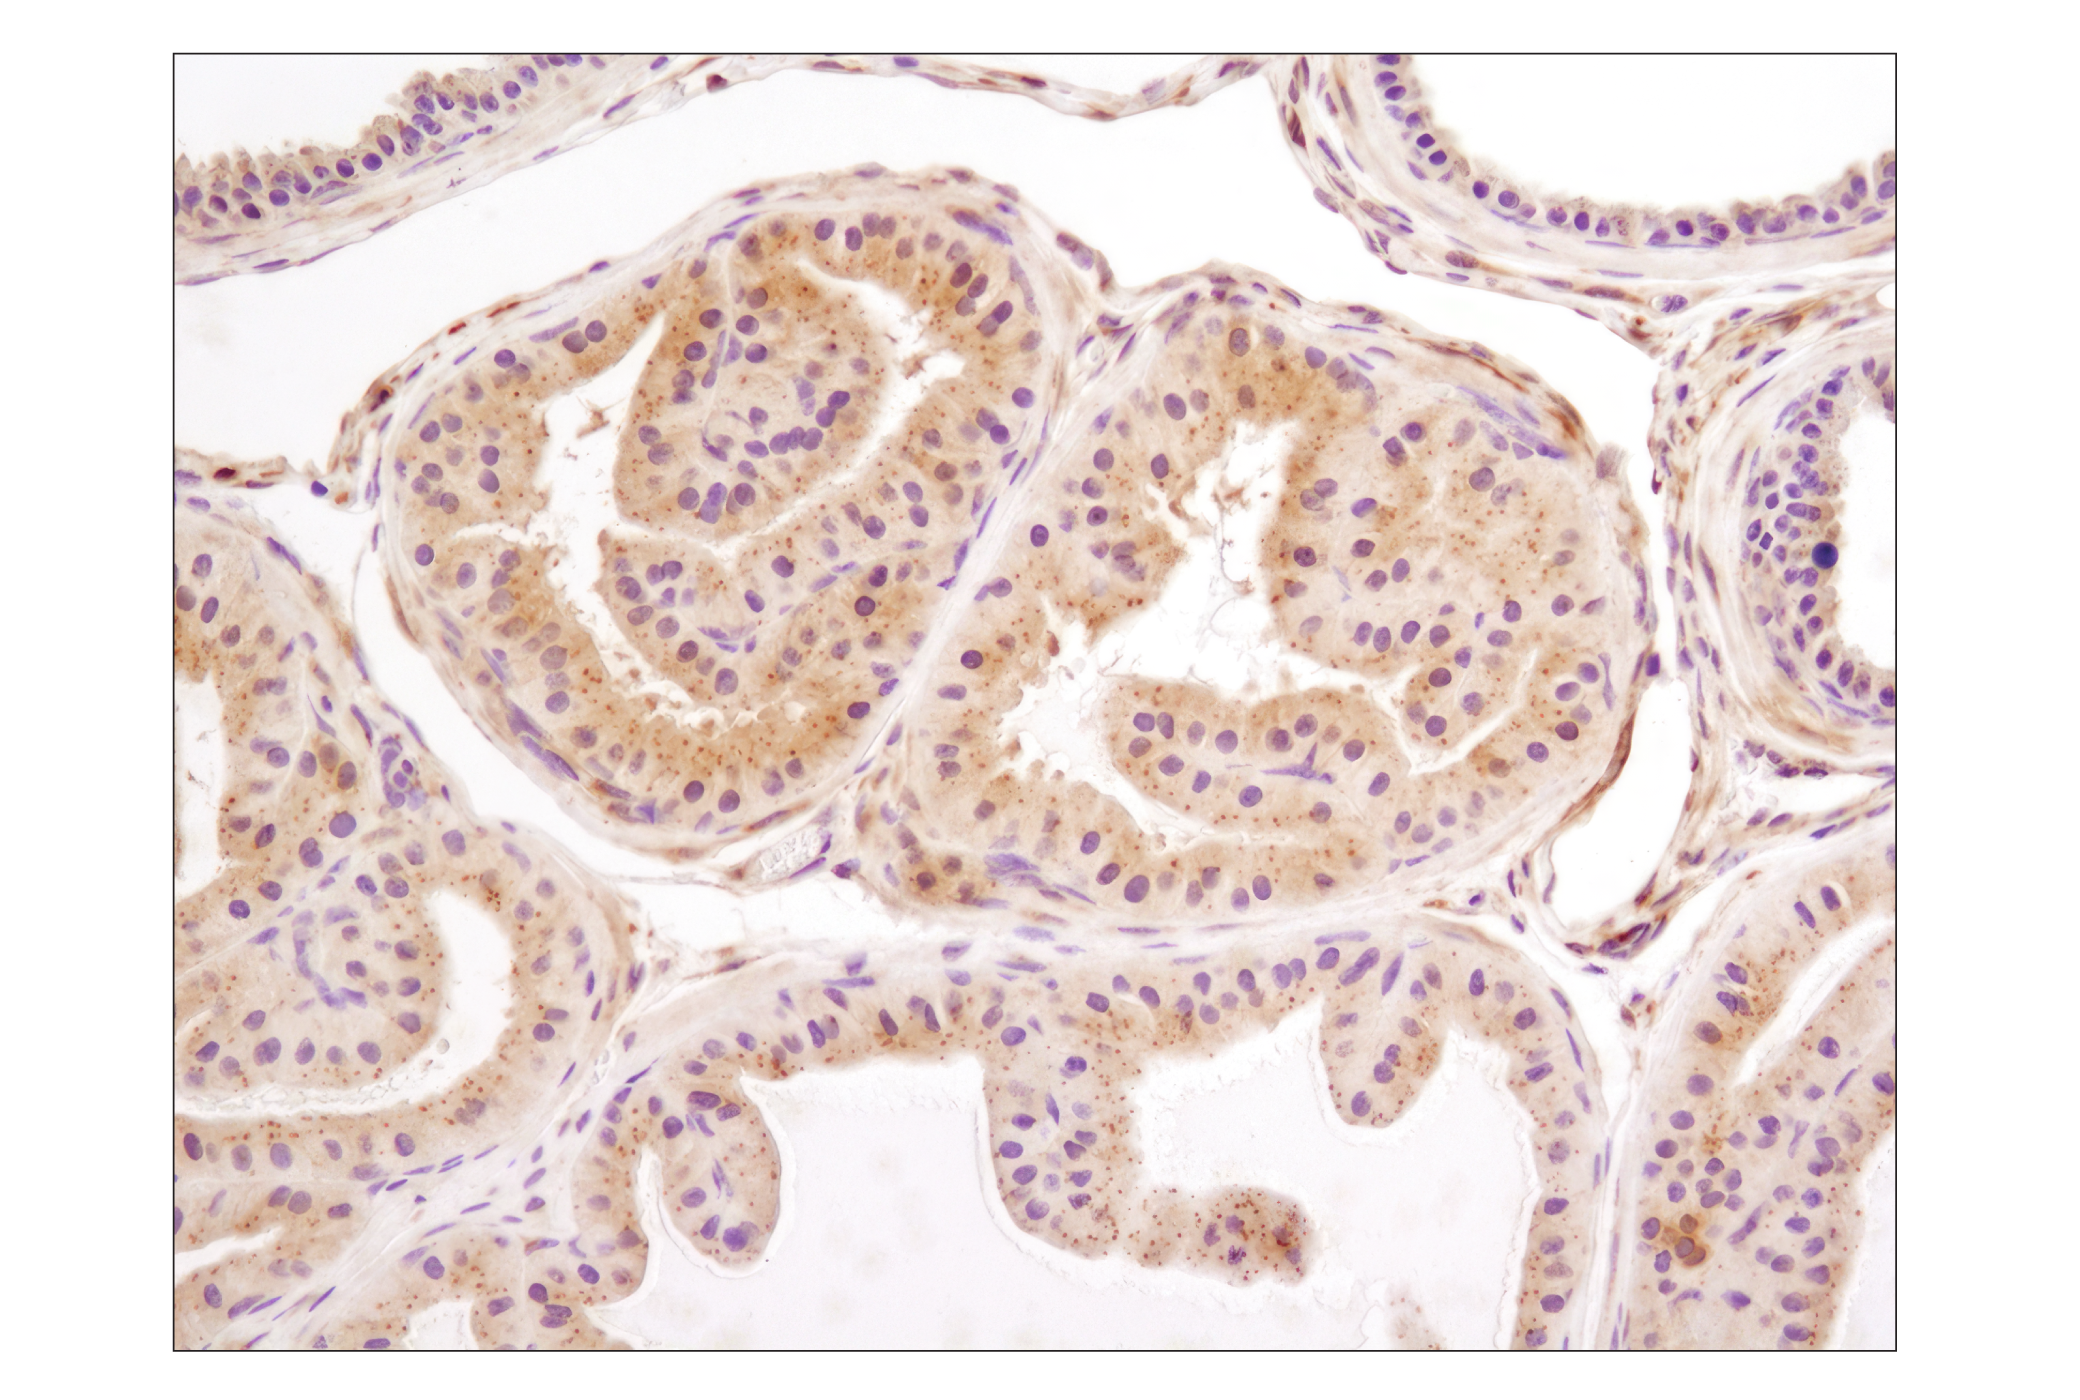  Image 21: p62/KEAP1/NRF2 Pathway Antibody Sampler Kit